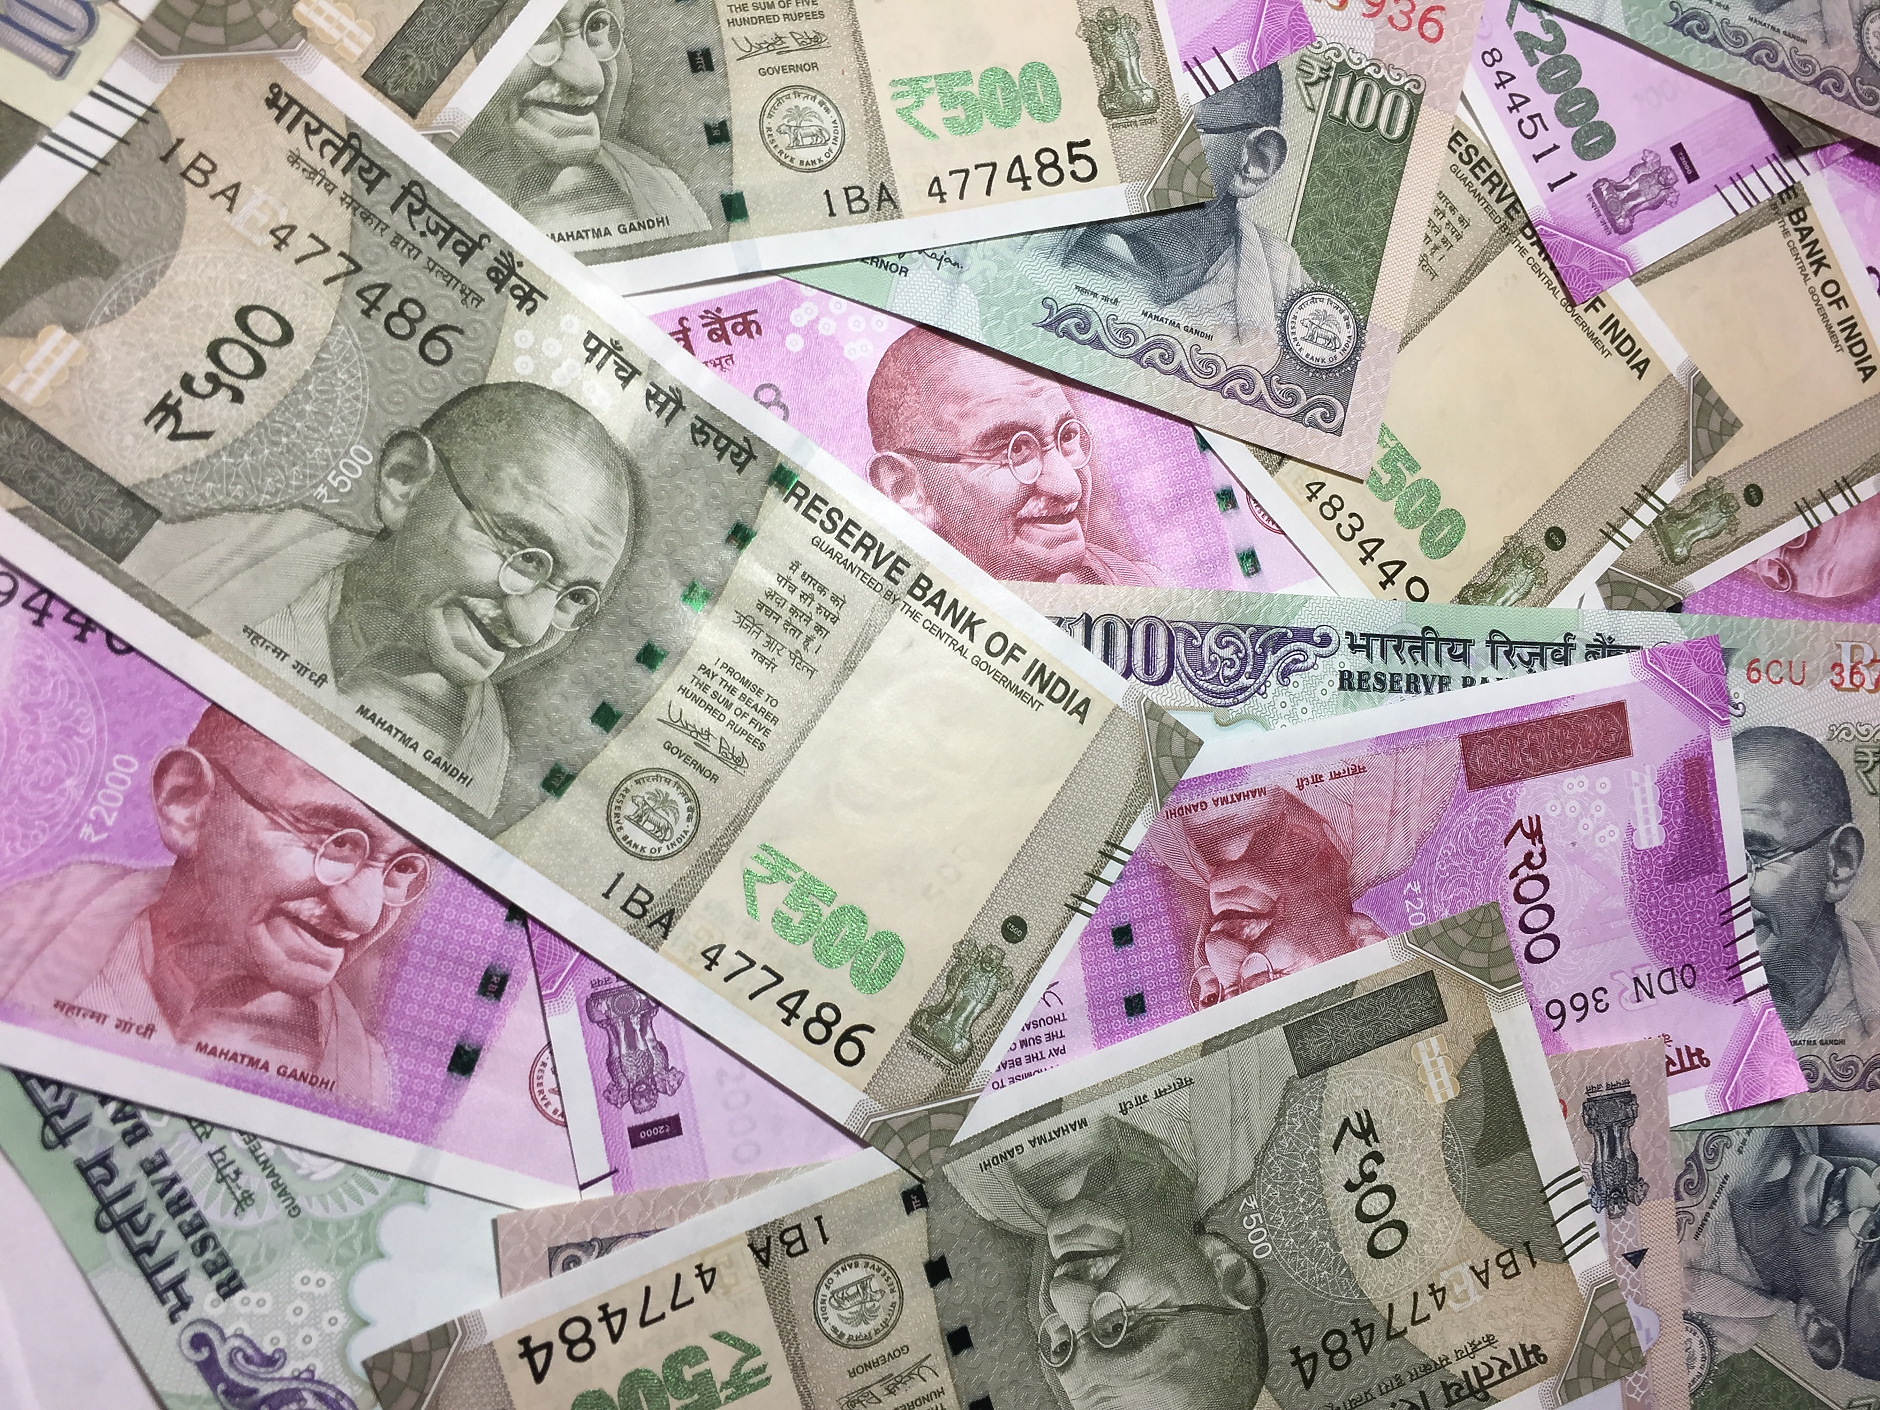 Индия изтегля от обращение банкнотите с най-висока стойност